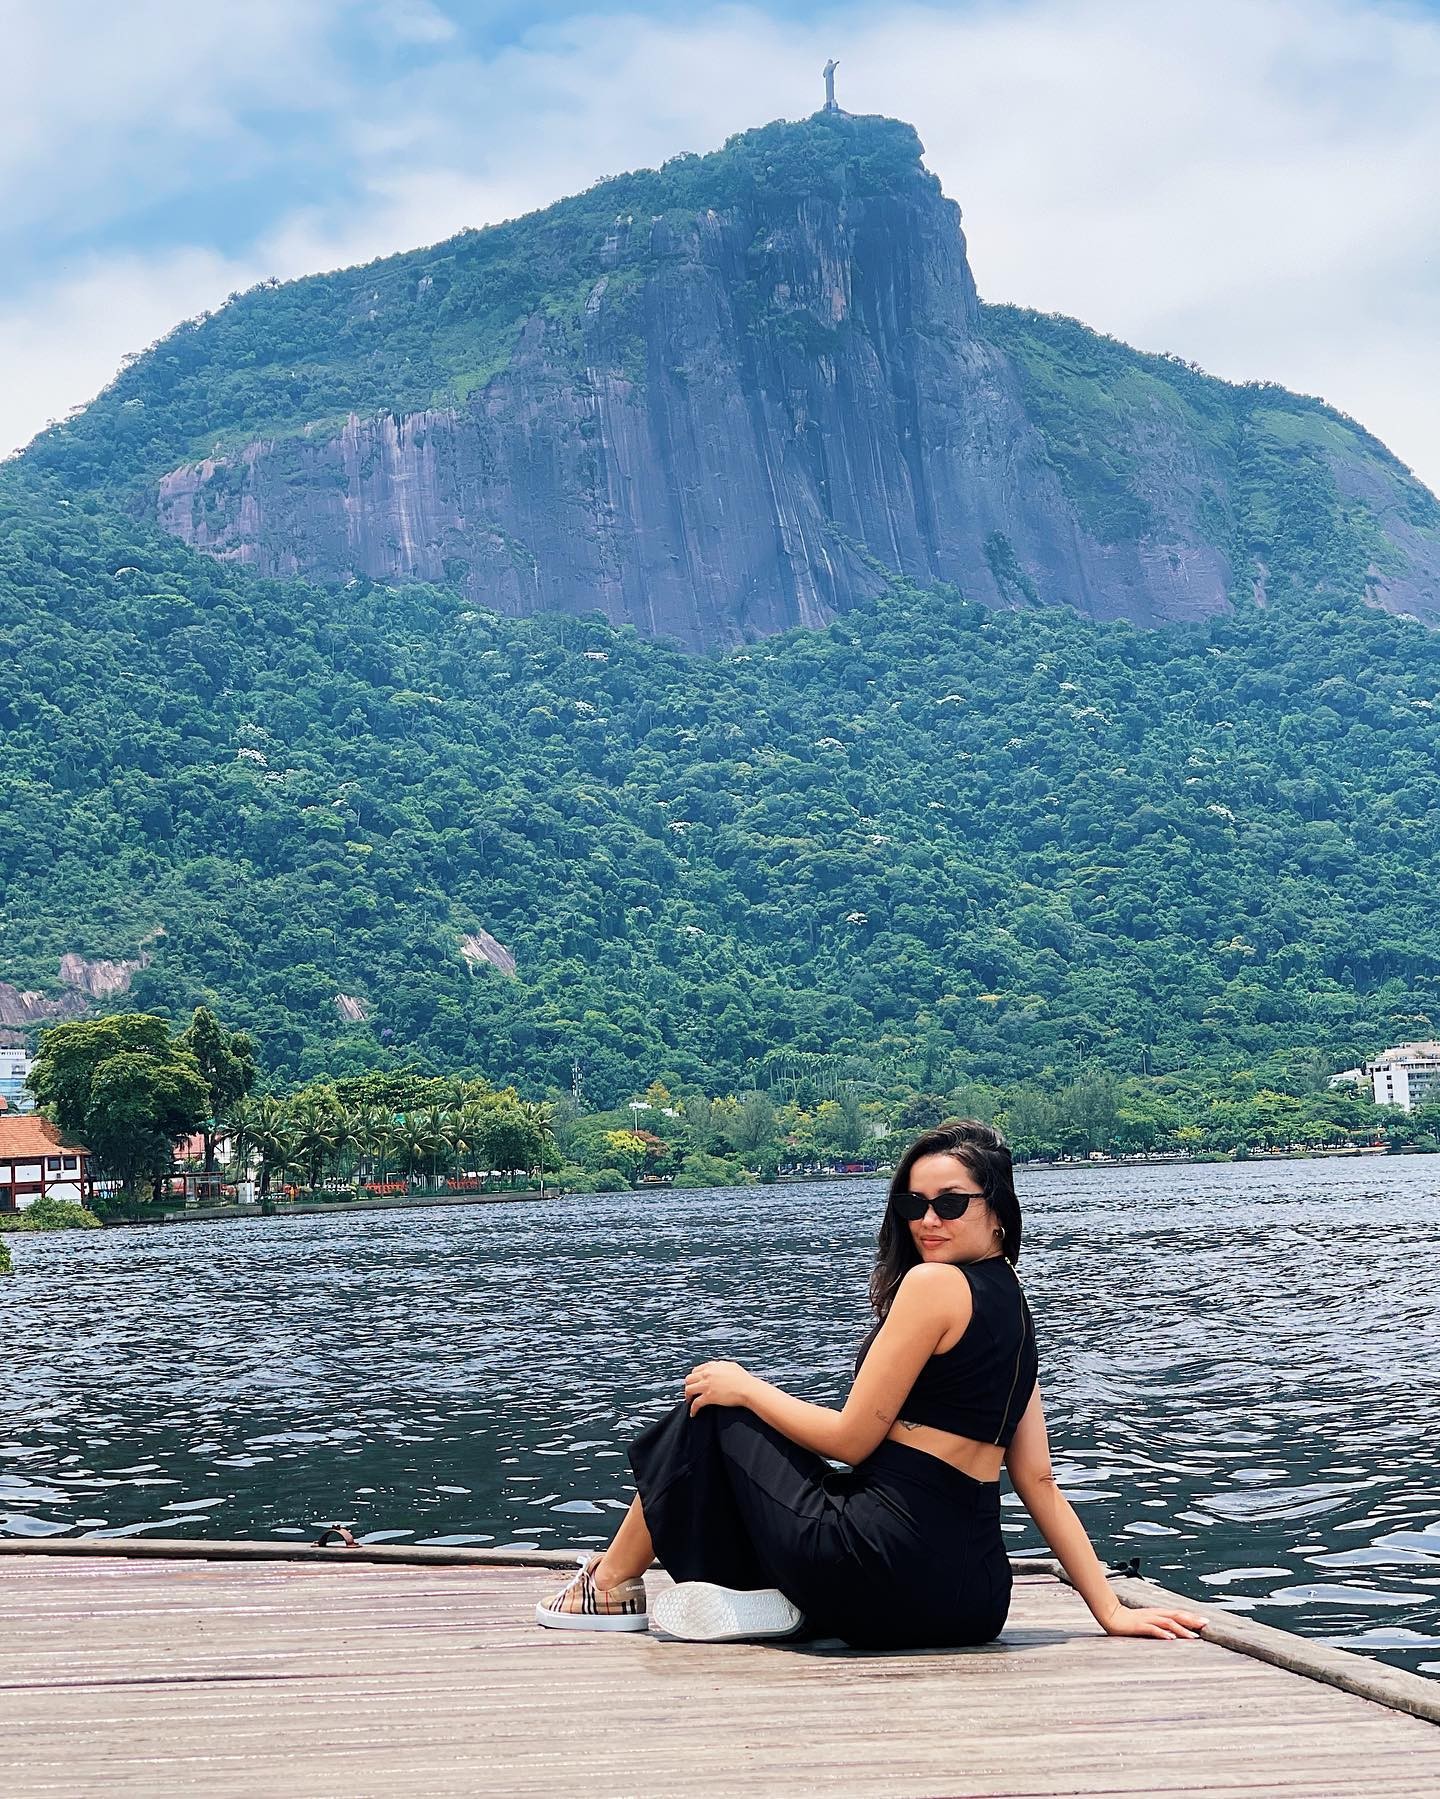 Juliette posa em paisagem paradisíaca e fala do amor pelo Rio de Janeiro (Foto: Reprodução / Instagram)